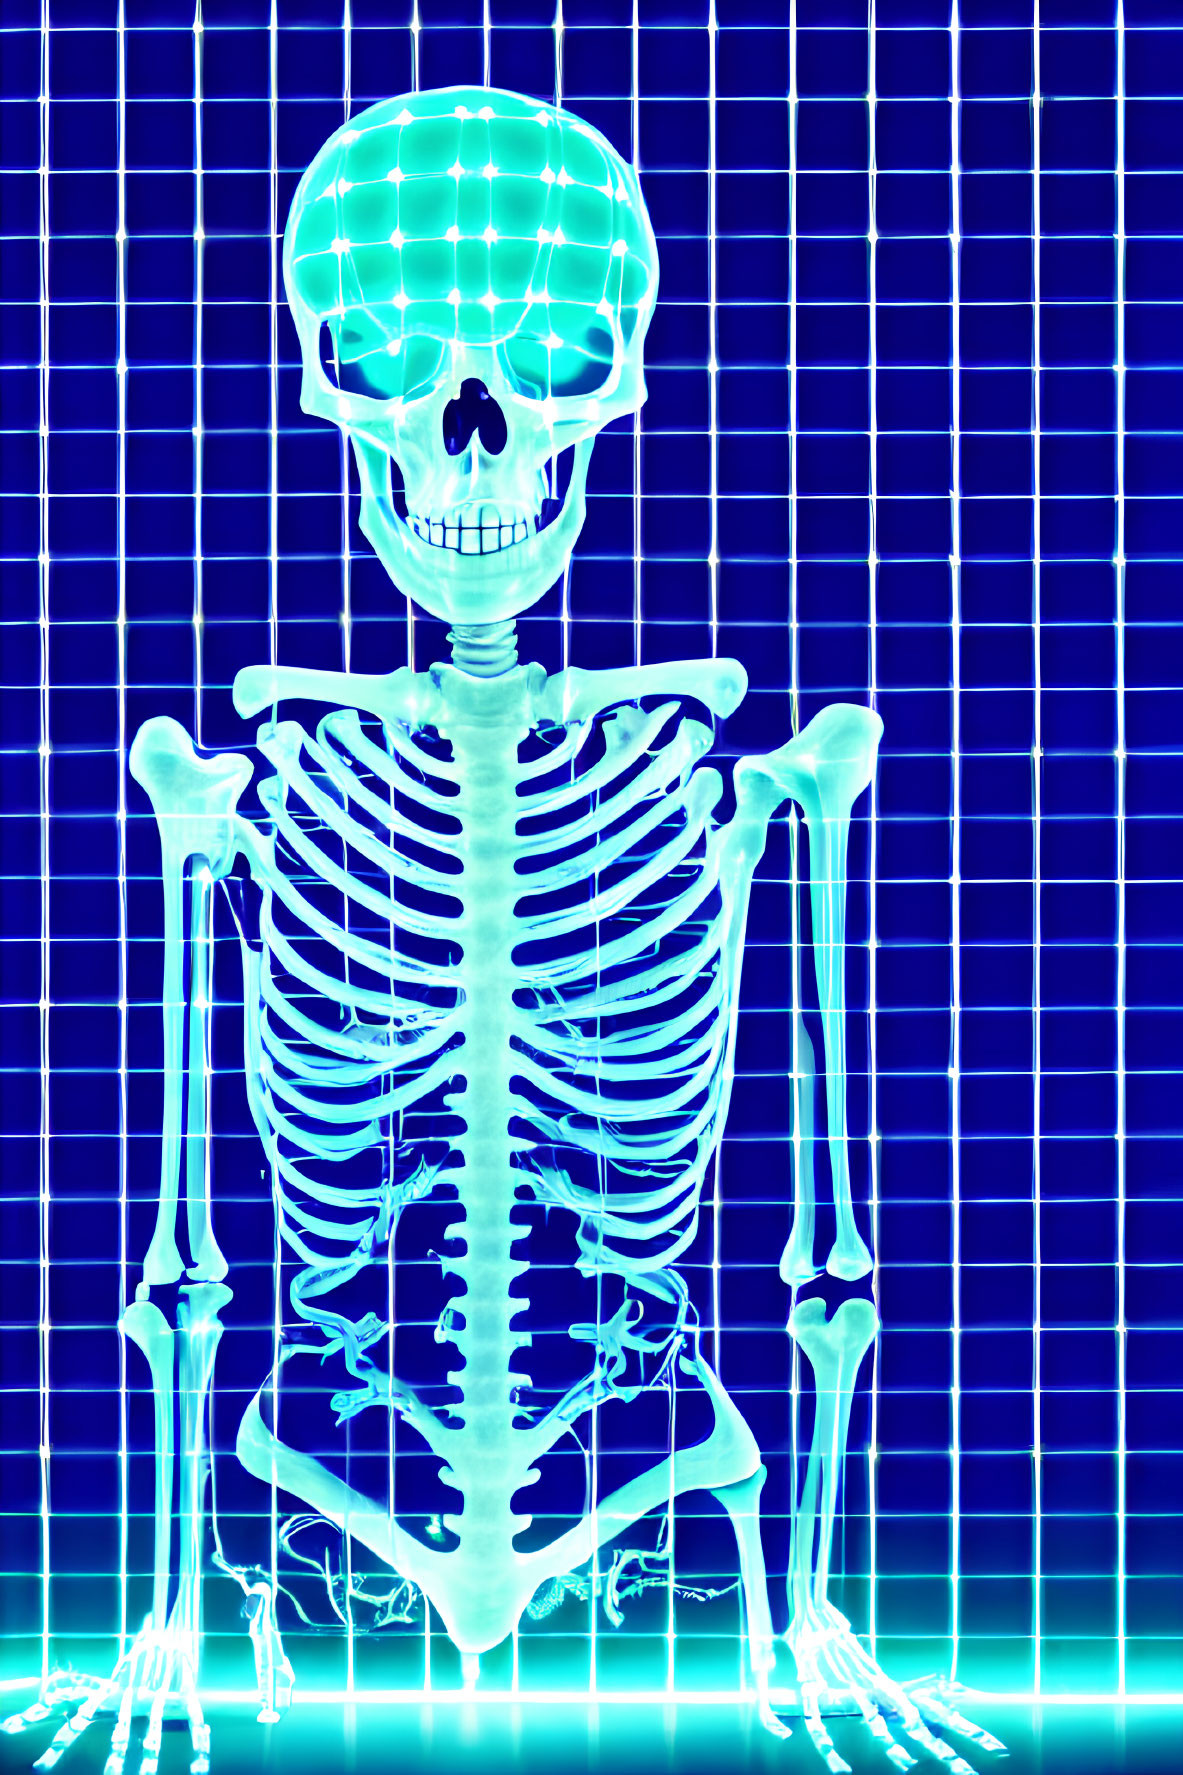 Digital illustration: Human skeleton in glowing blue hue on grid background